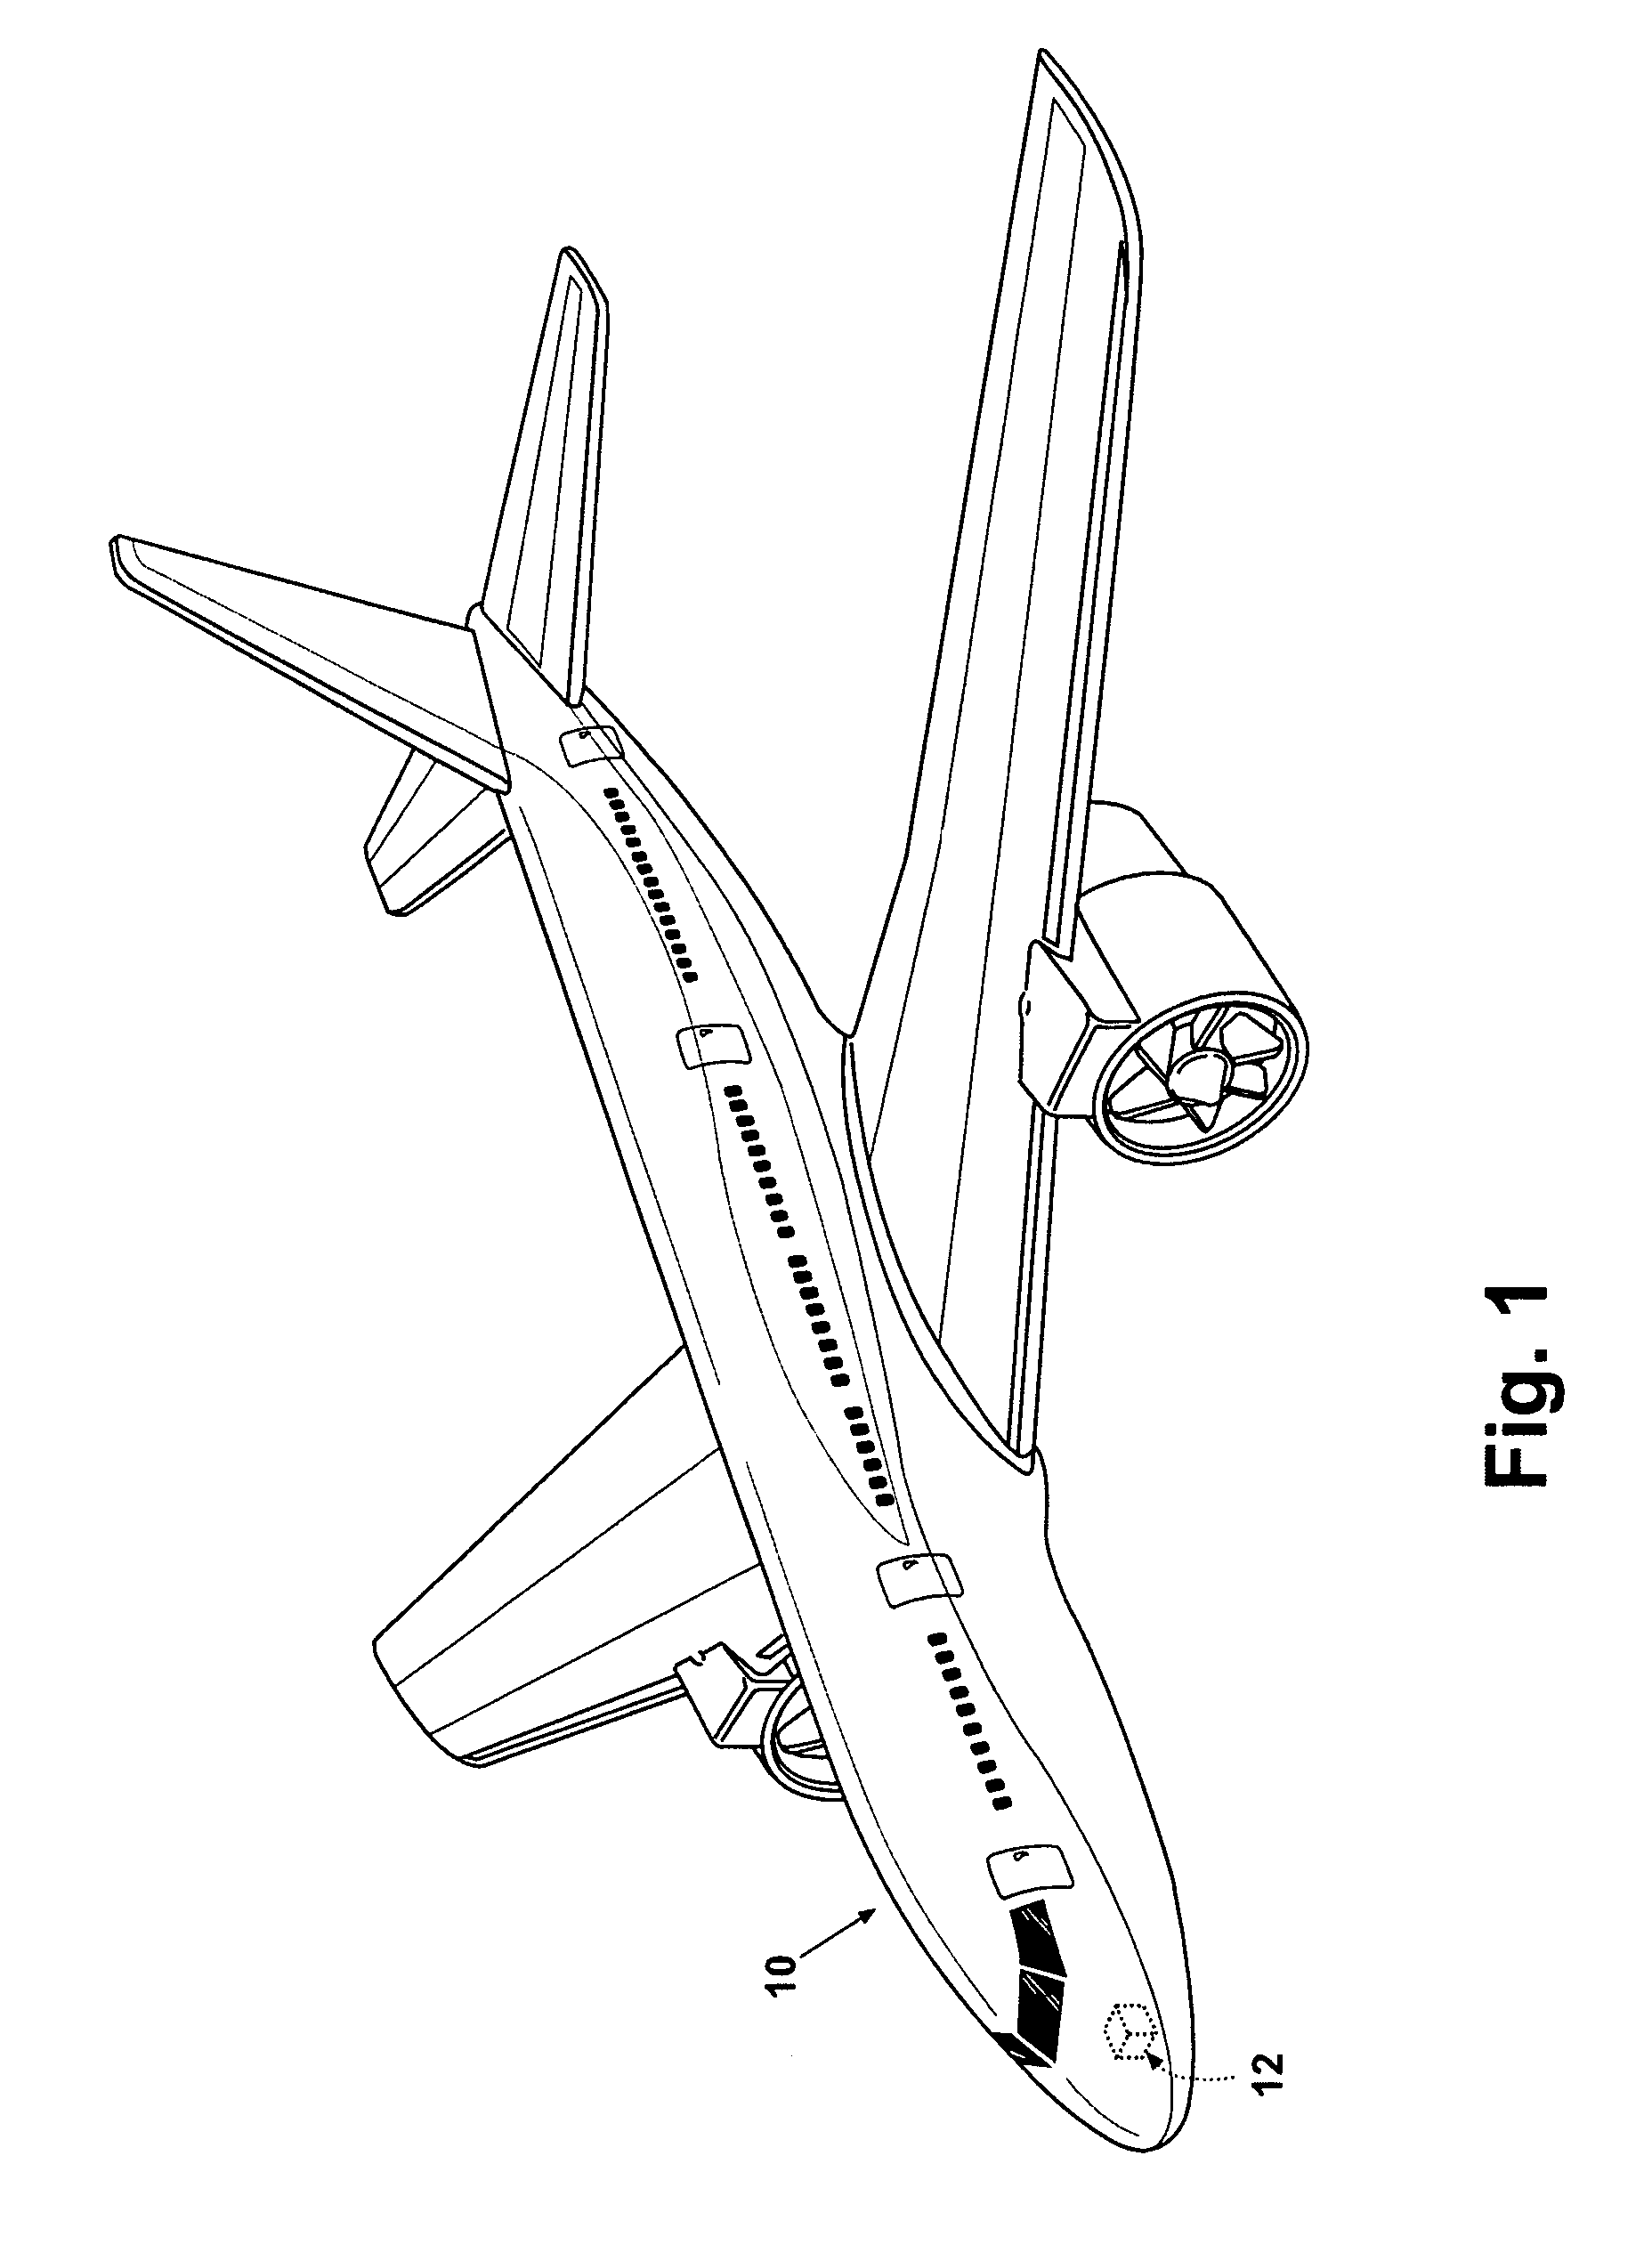 Avionics chassis